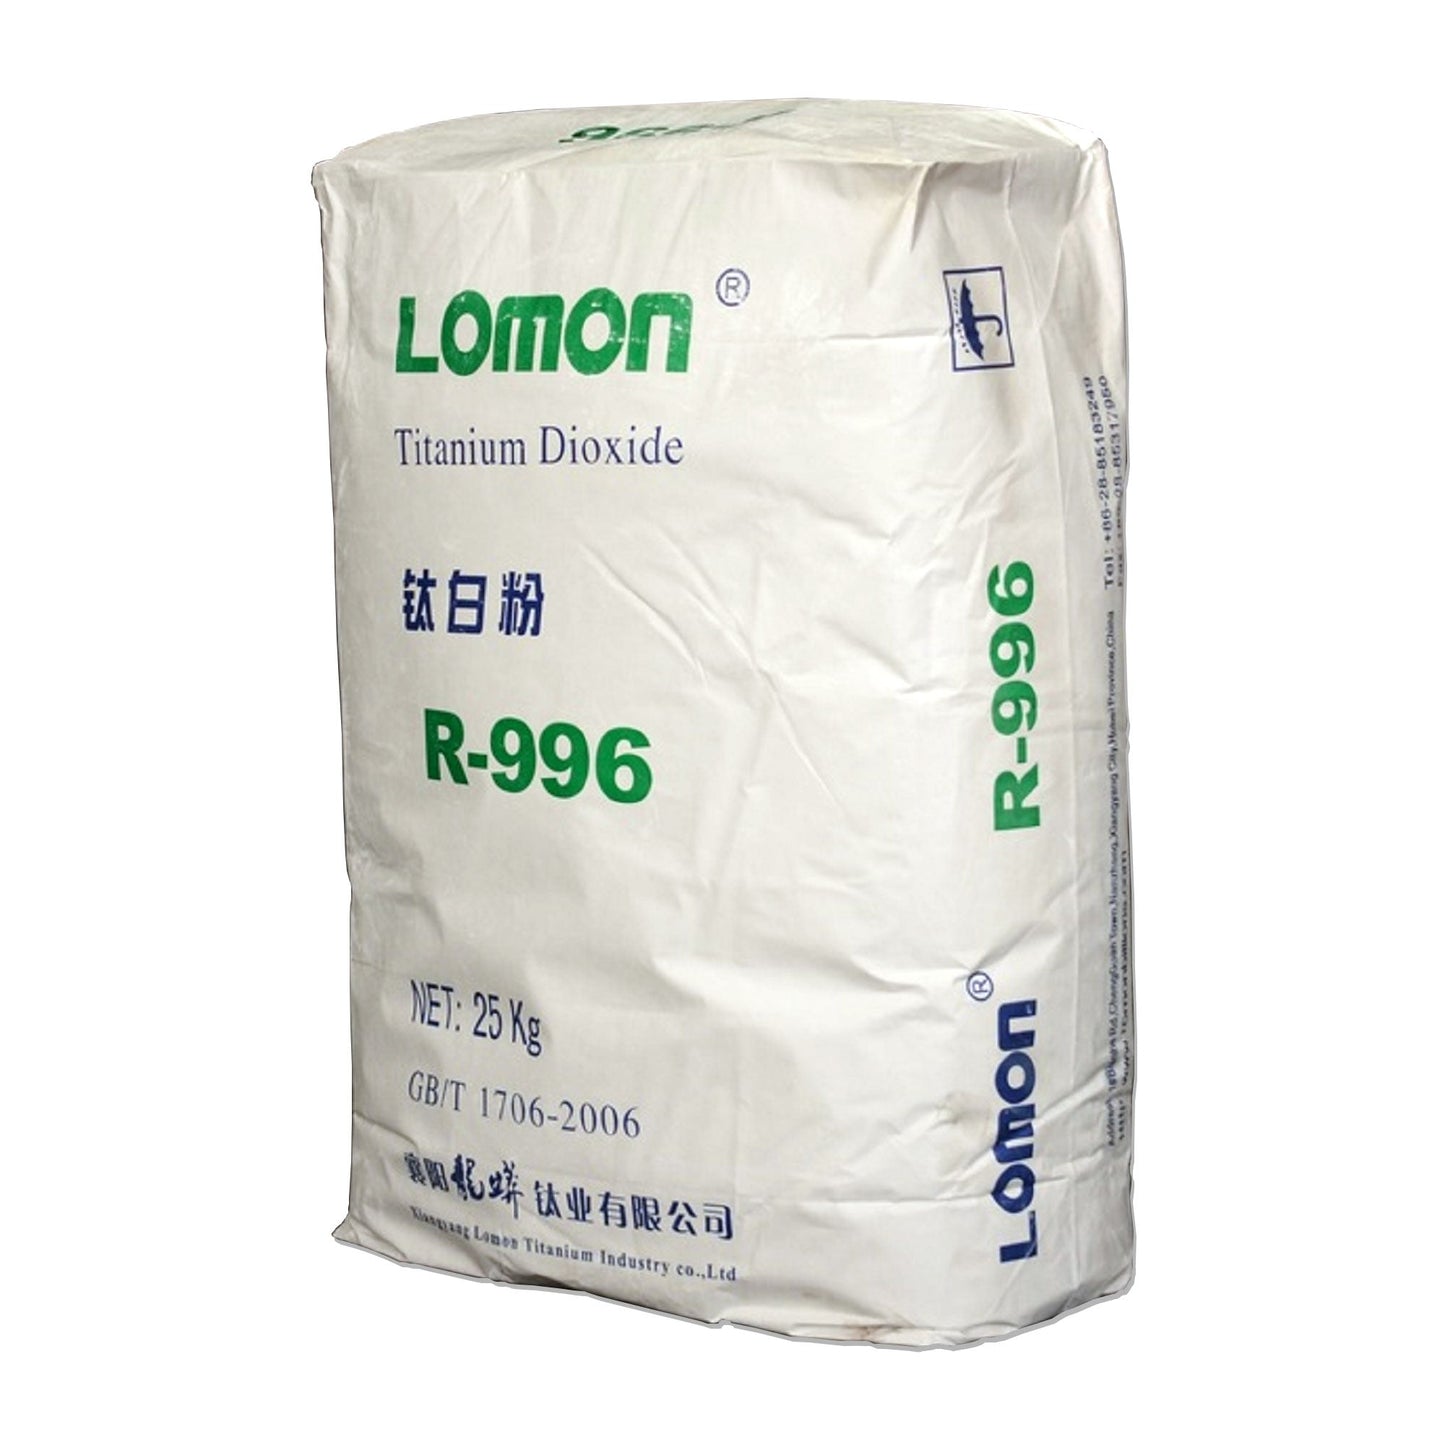 Weiss für Beton / Zement / Gips - 25kg Sack